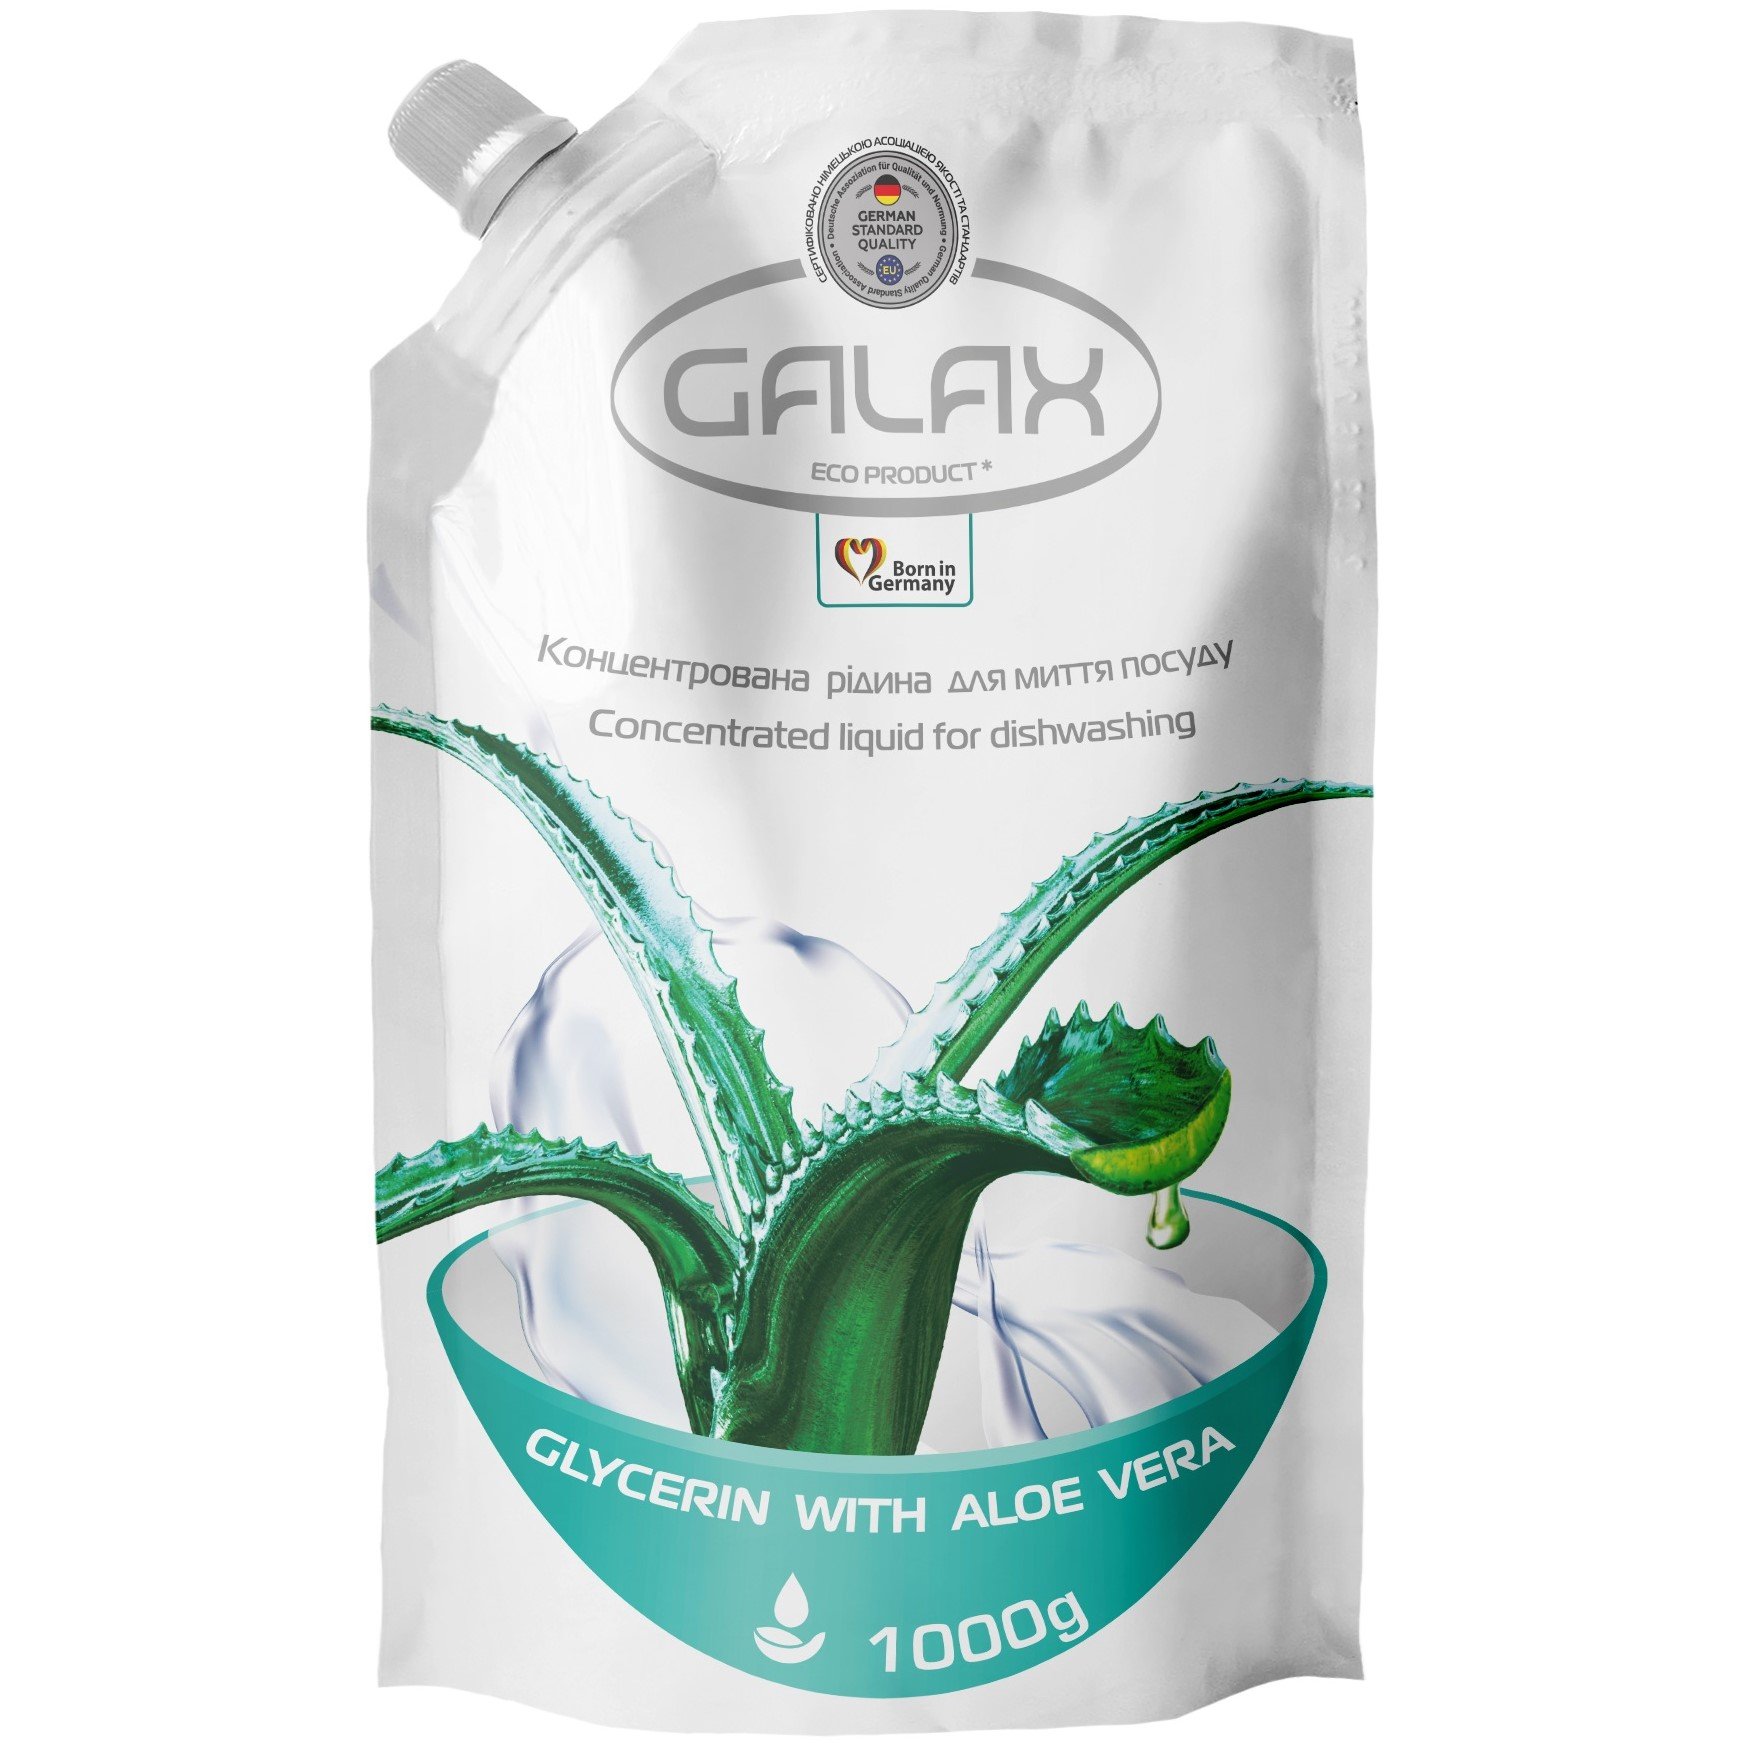 Концентрированная жидкость для мытья посуды Galax Glycerin With Aloe Vera 1000 г - фото 1